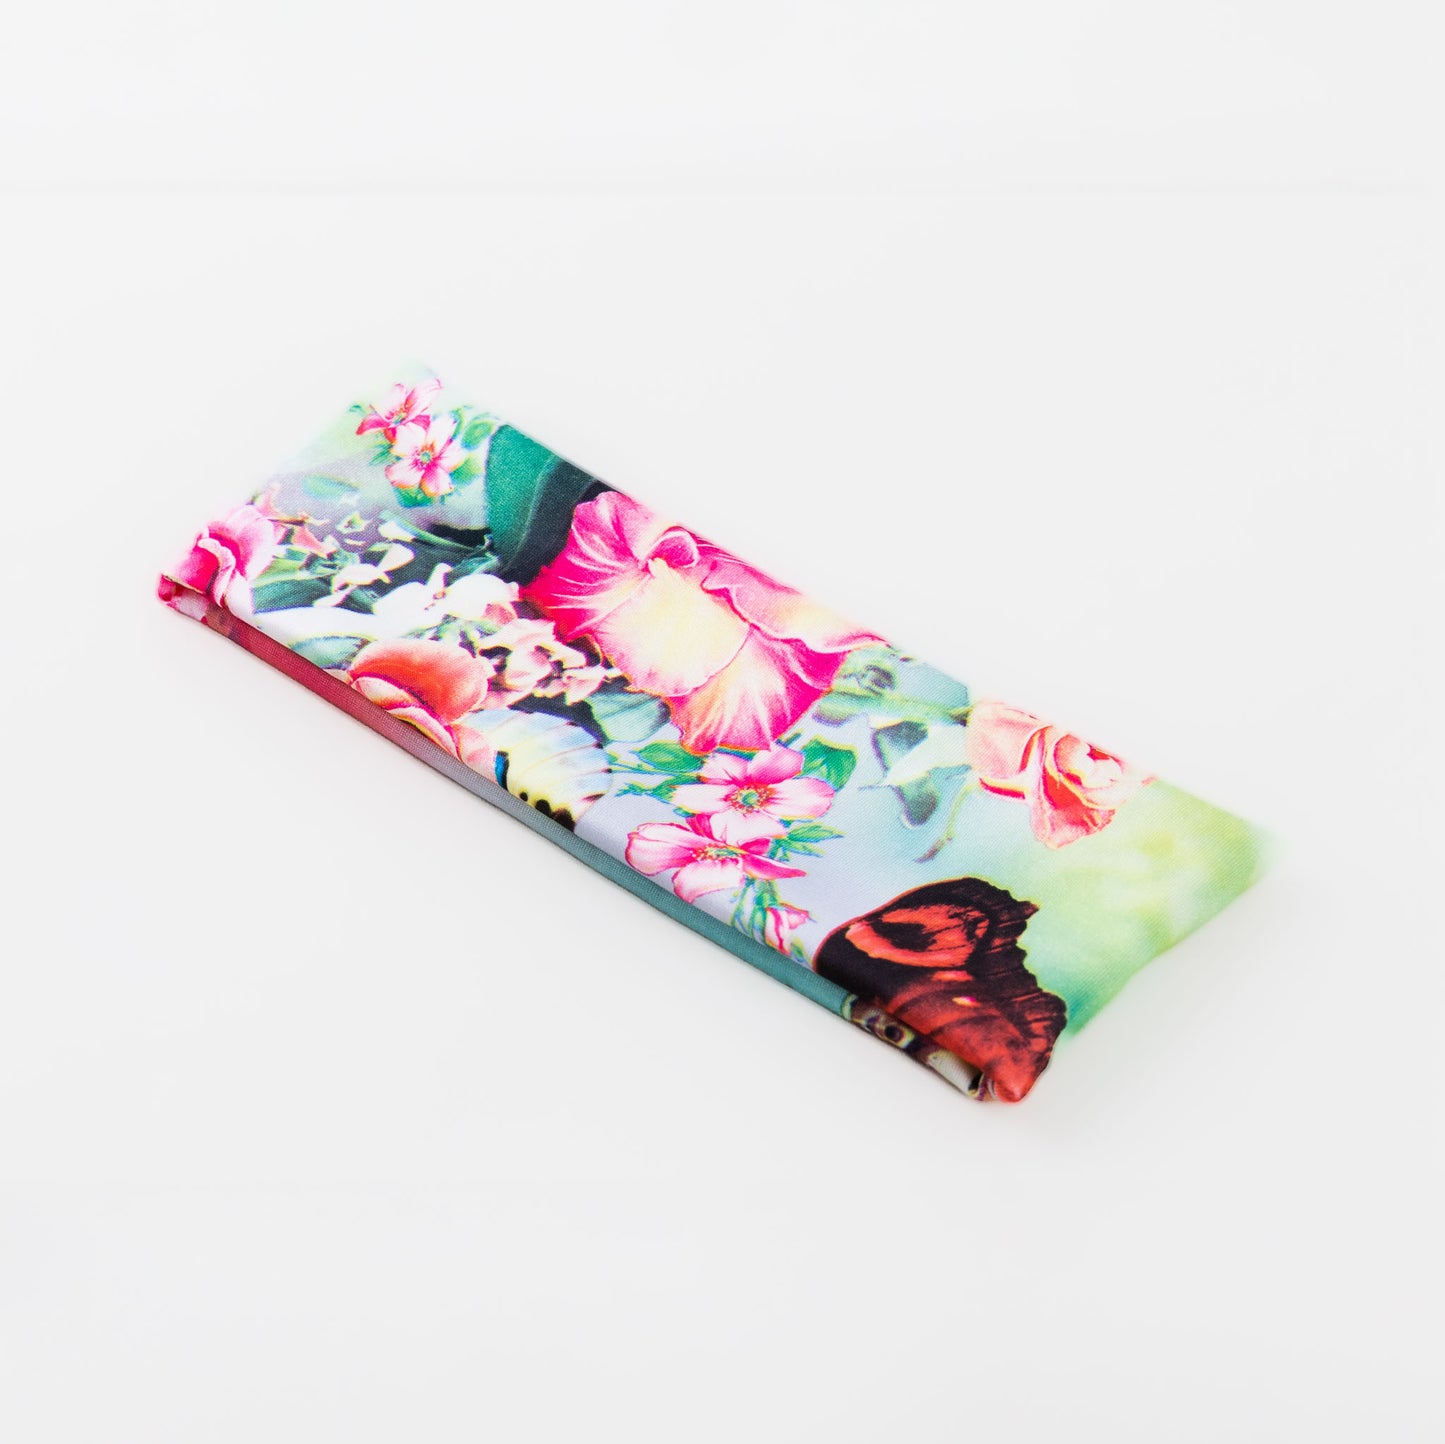 Bentiță de păr simplă cu, imprimeu flower jungle - Verde, Roz